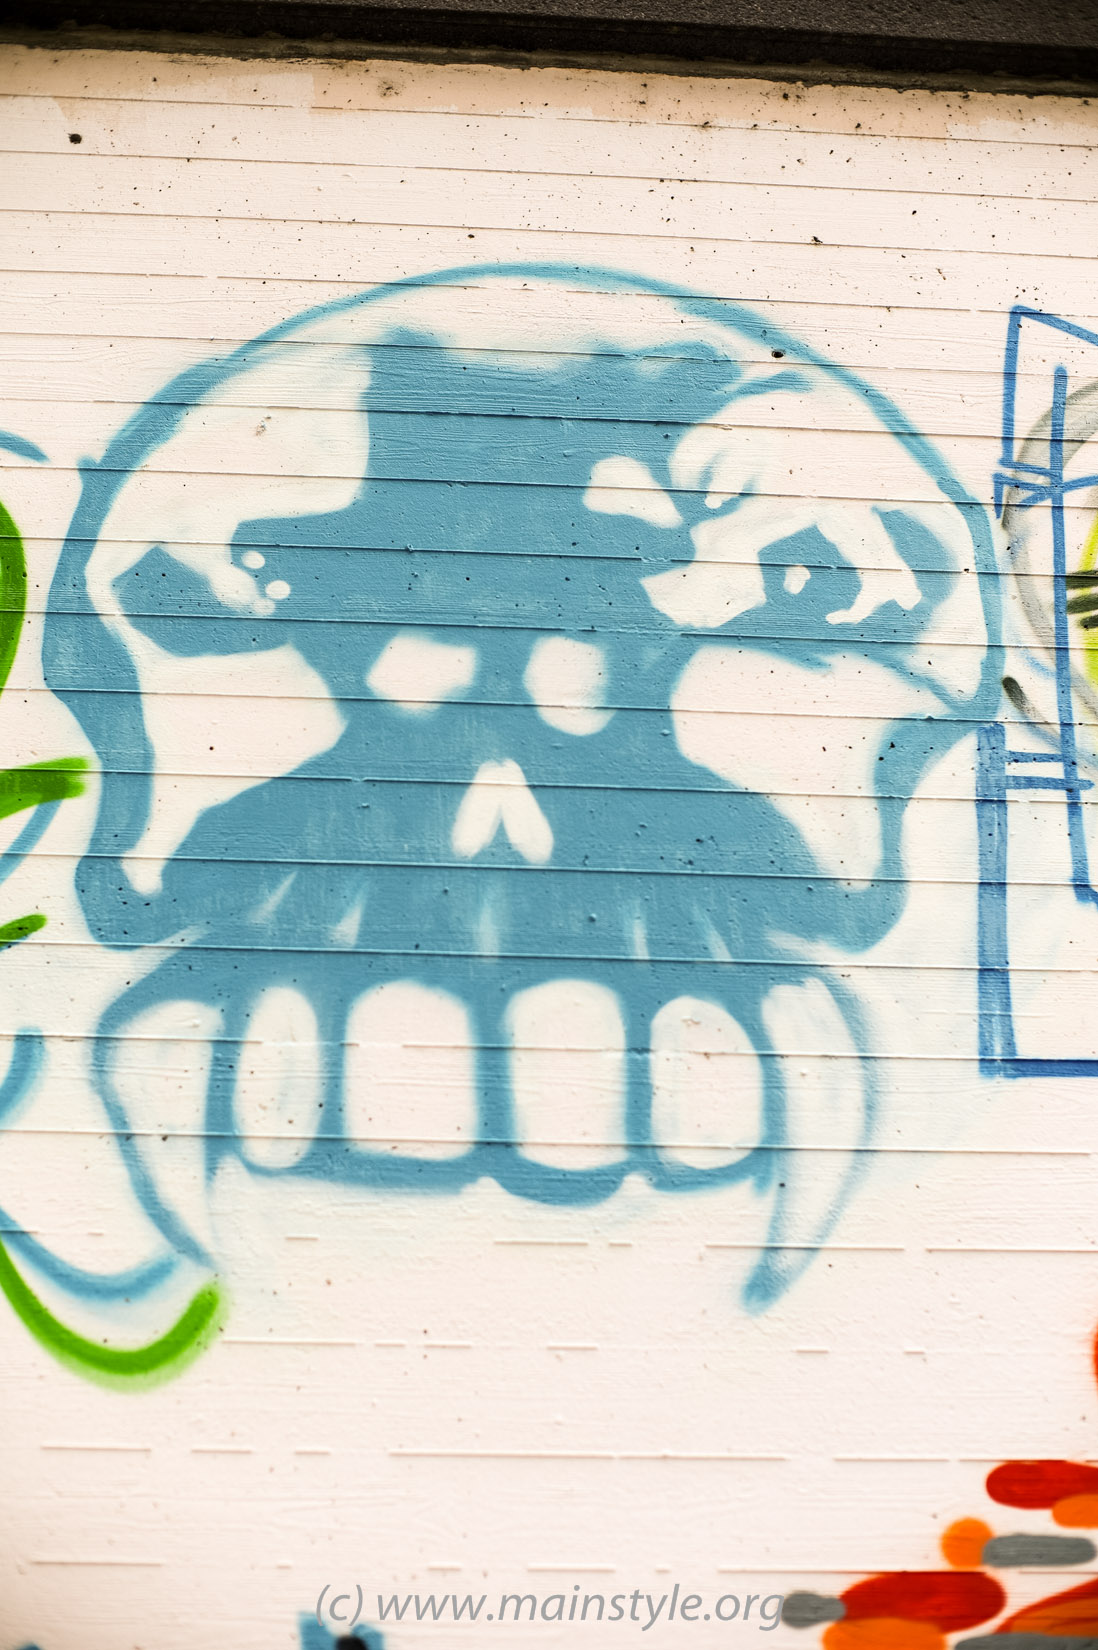 Frankfurt-Höchst_Graffiti_Süwag-Wall_2012 (4 von 35)